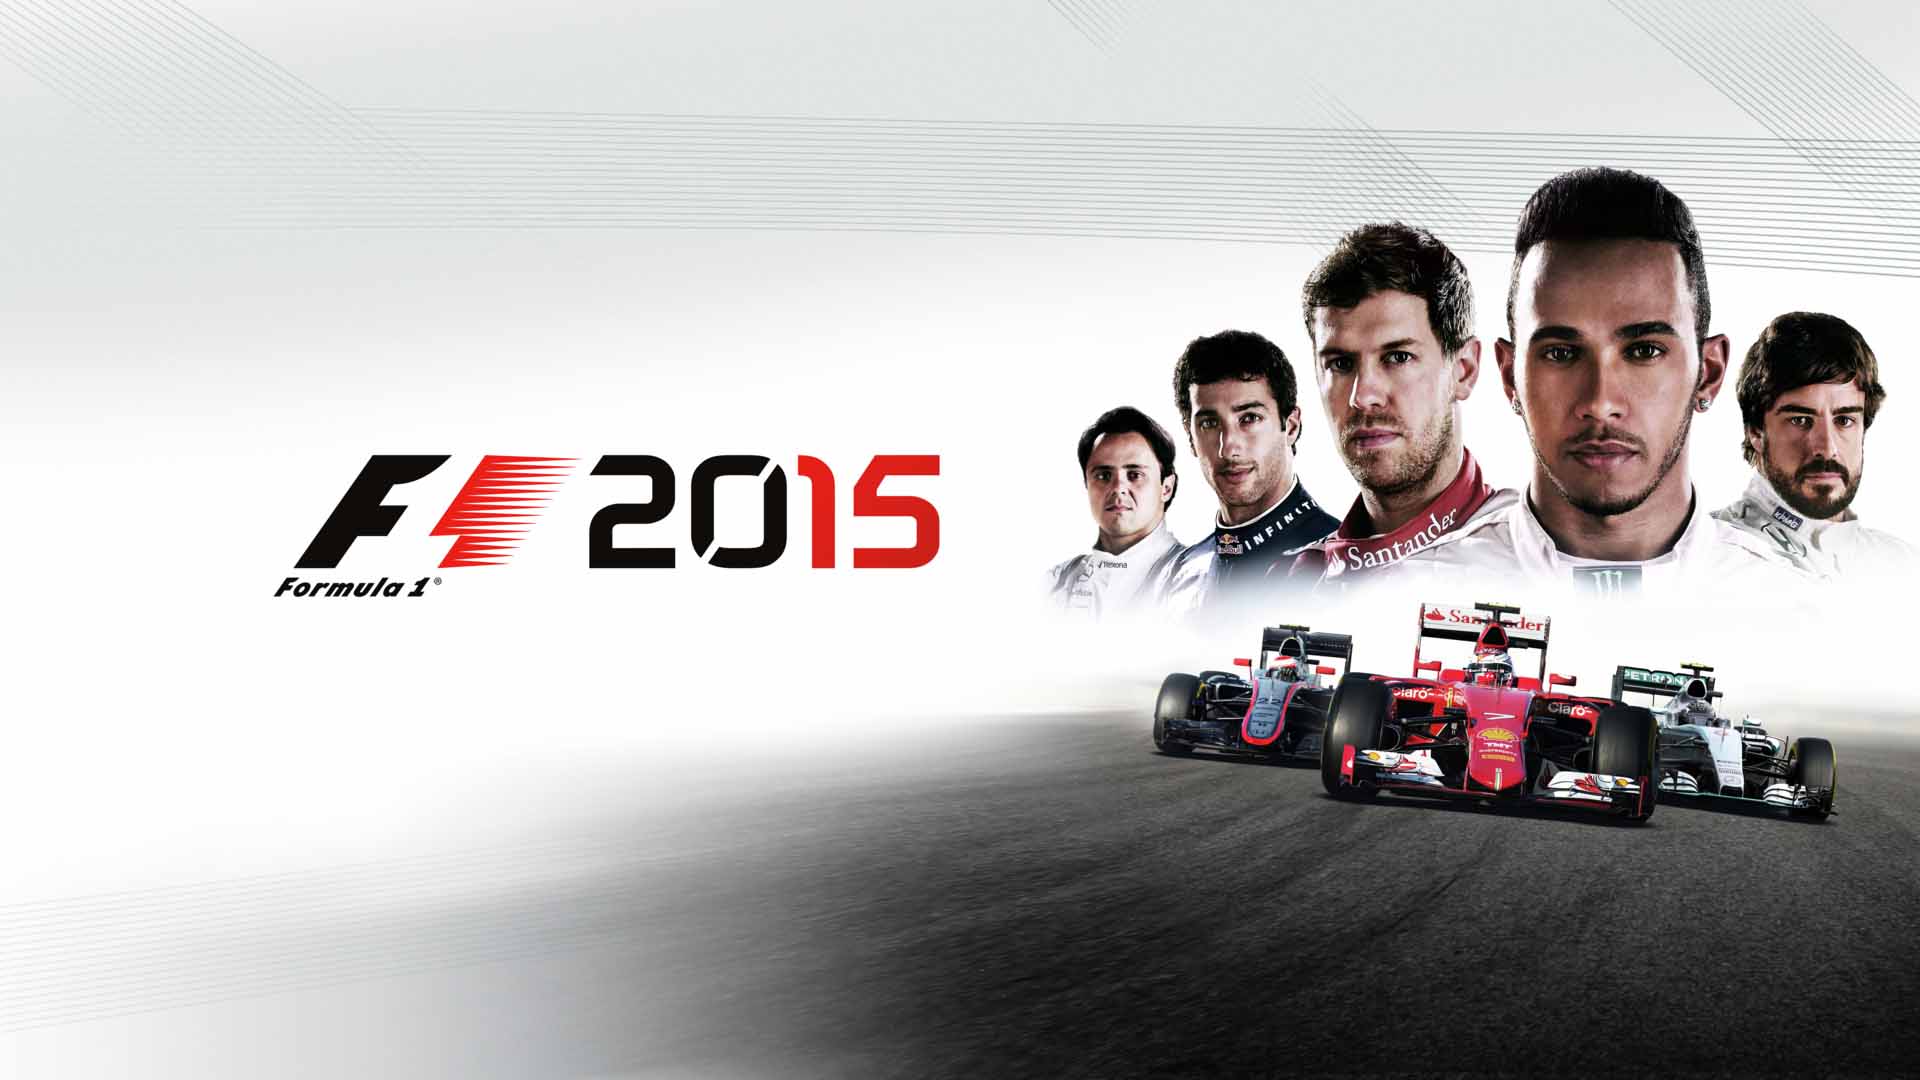 F1 2015 + Update 2 + Proper Crack